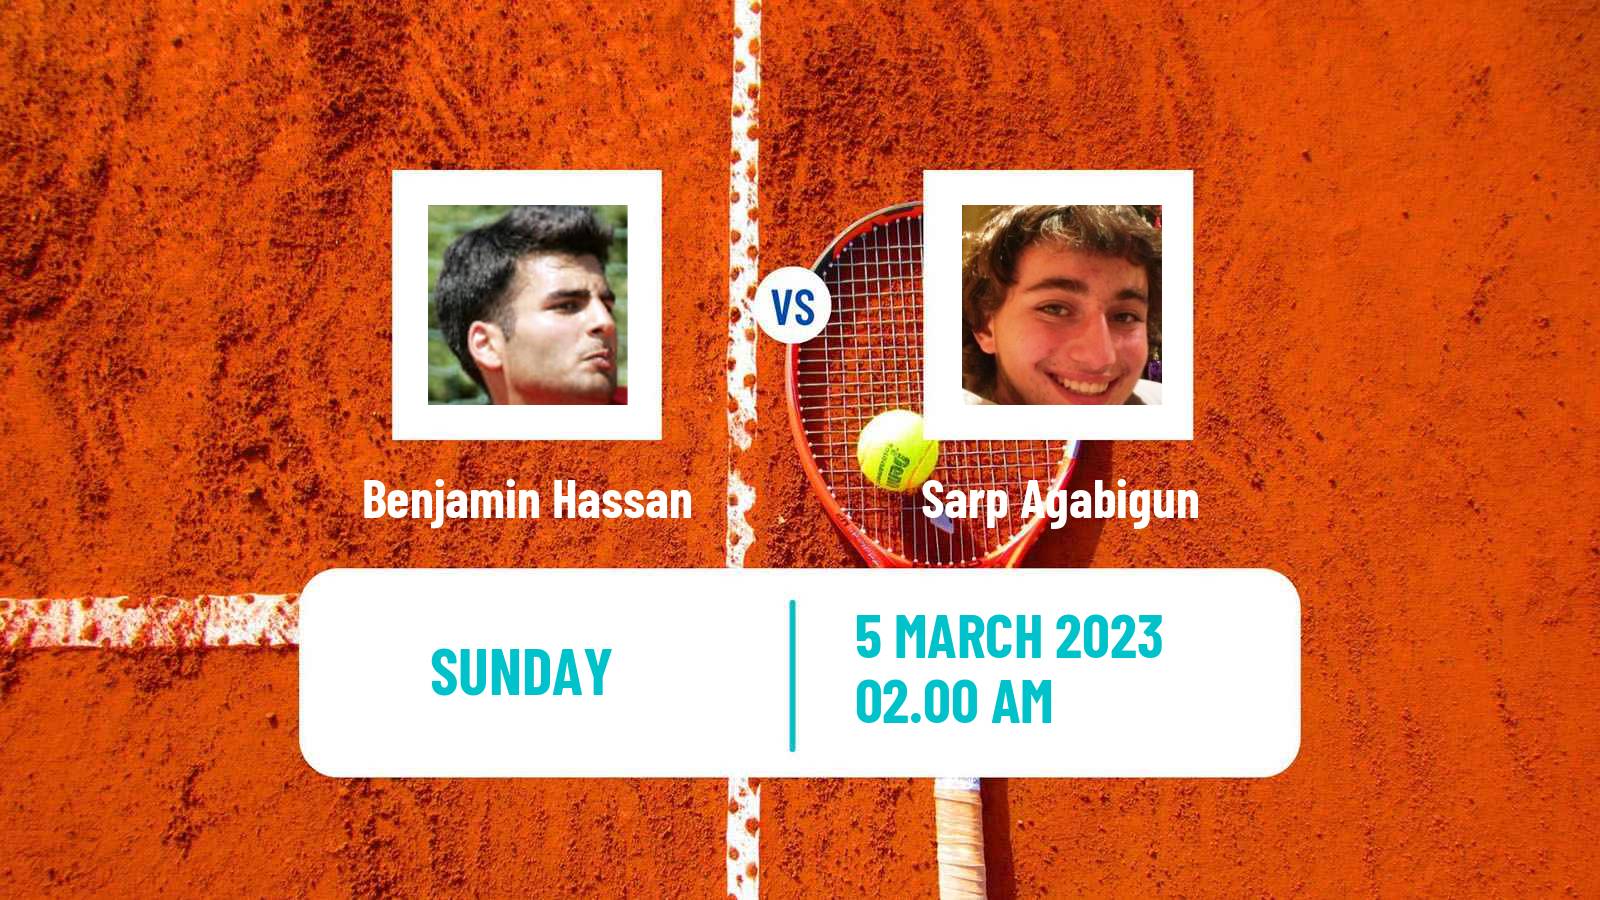 Tennis ATP Challenger Benjamin Hassan - Sarp Agabigun